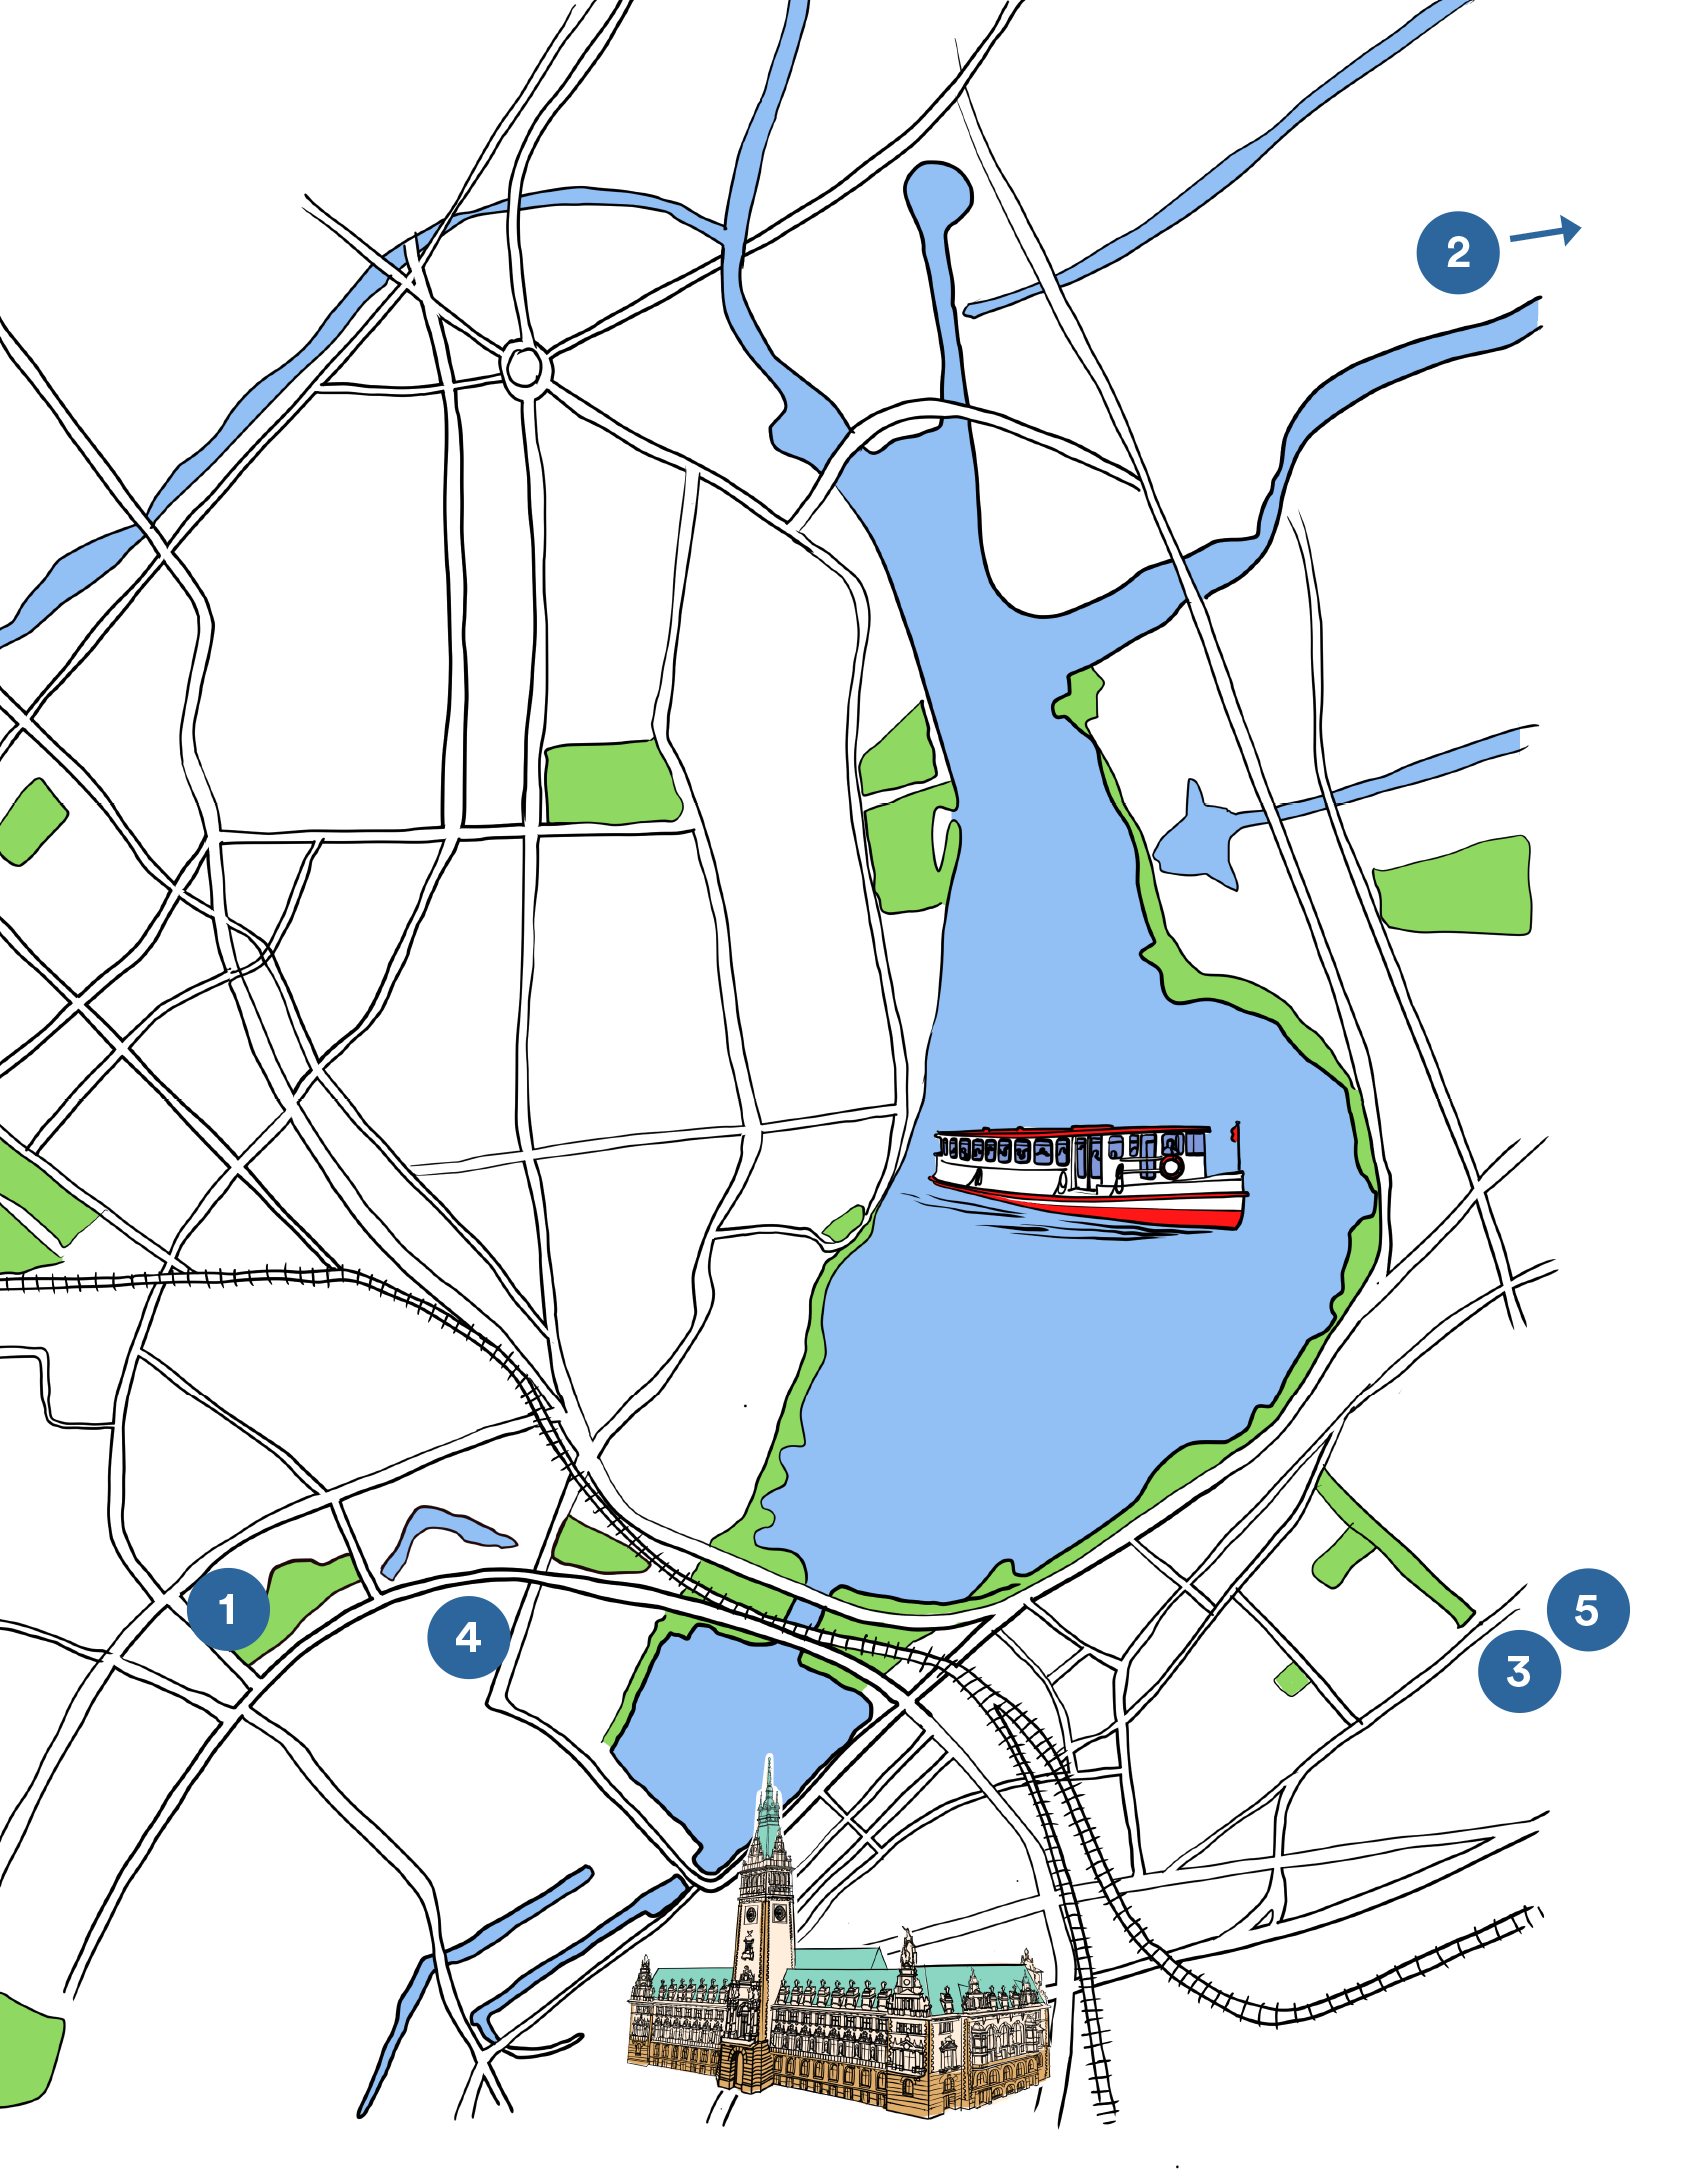 Illustration: Eine vereinfachte Karte des Innenstadtbereichs von Hamburg. Die Karte enthält keine Straßennamen. Ungefähr in der Mitte sind die Binnen- und die Außenalster eingezeichnet. Am unteren Rand ist das Hamburger Rathaus als Illustration eingezeichnet. Die Standorte von fünf Gerichtsgebäuden der Gerichtsbarkeiten, die im Text G2a erwähnt werden, sind mit nummerierten blauen Kreisen in der Karte markiert.